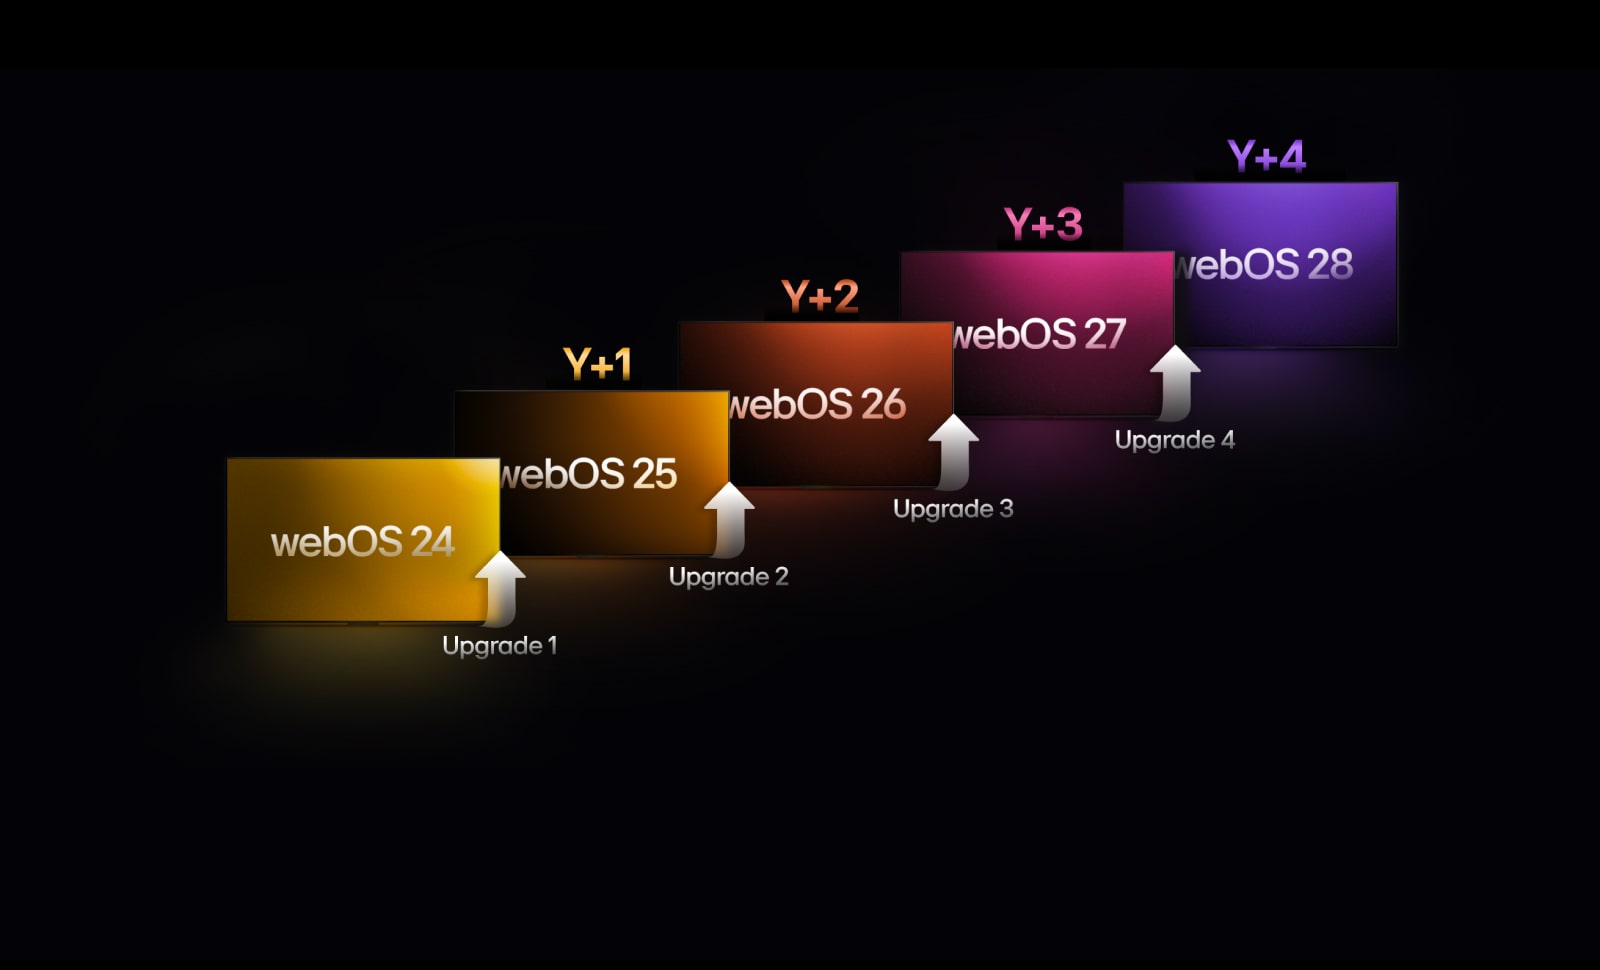 Pieci četrstūri dažādās krāsās izvietoti augšup, katram norādot gadu no “webOS 24” līdz “webOS 28”. Augšupvērstas bultas redzamas starp četrstūriem, norādot no “Upgrade 1” līdz “Upgrade 4”.